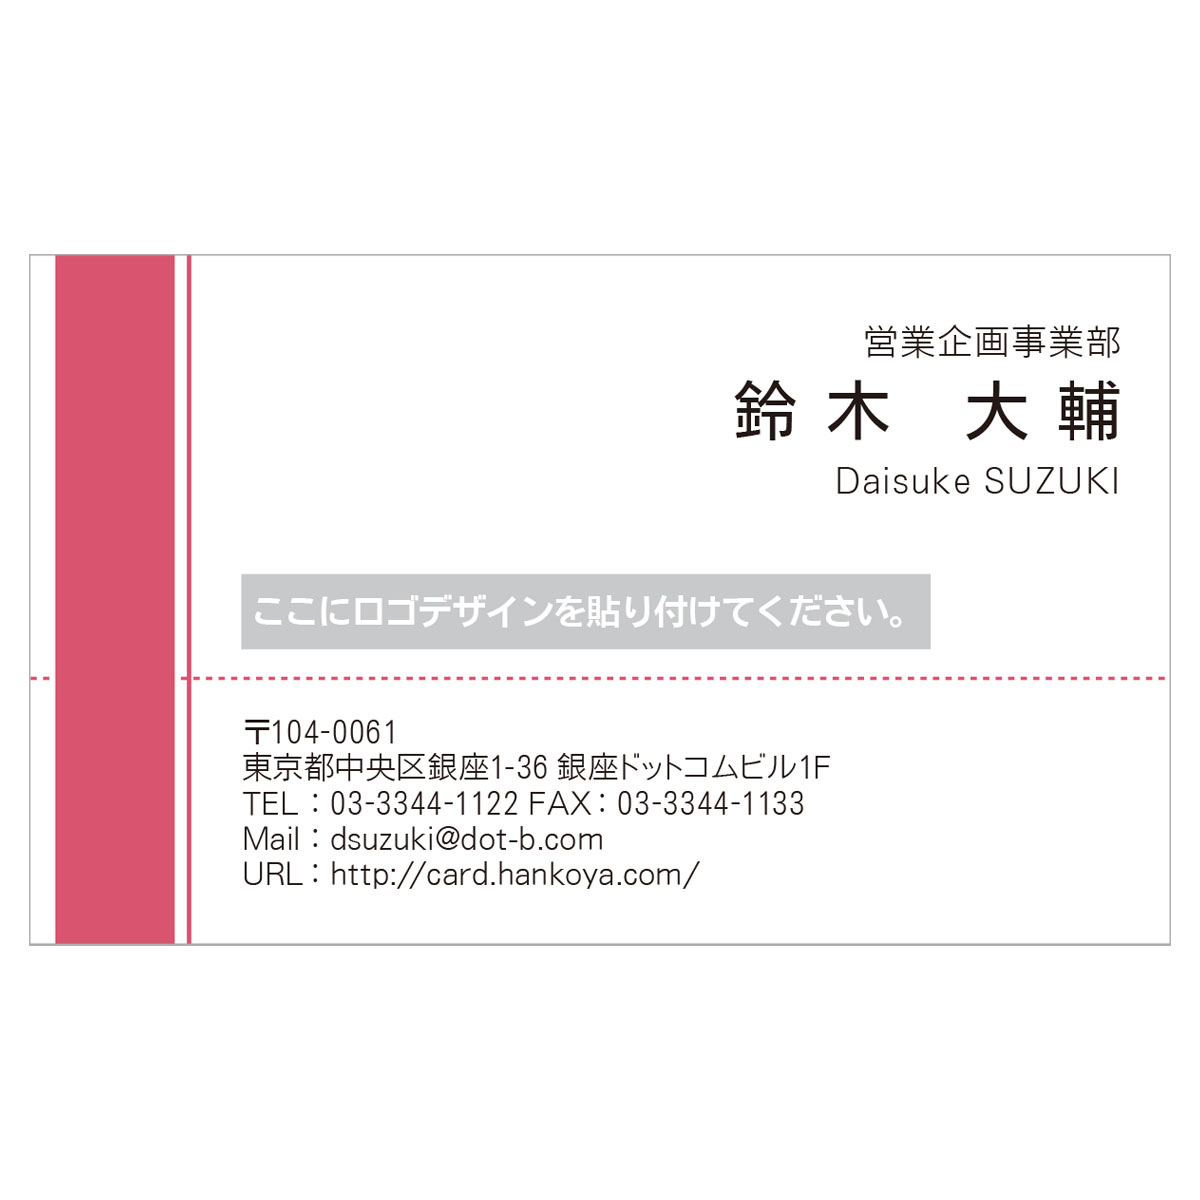 かんたんデザイン入稿名刺 ヨコ向き 両面カラー印刷 HG-01 英語表記